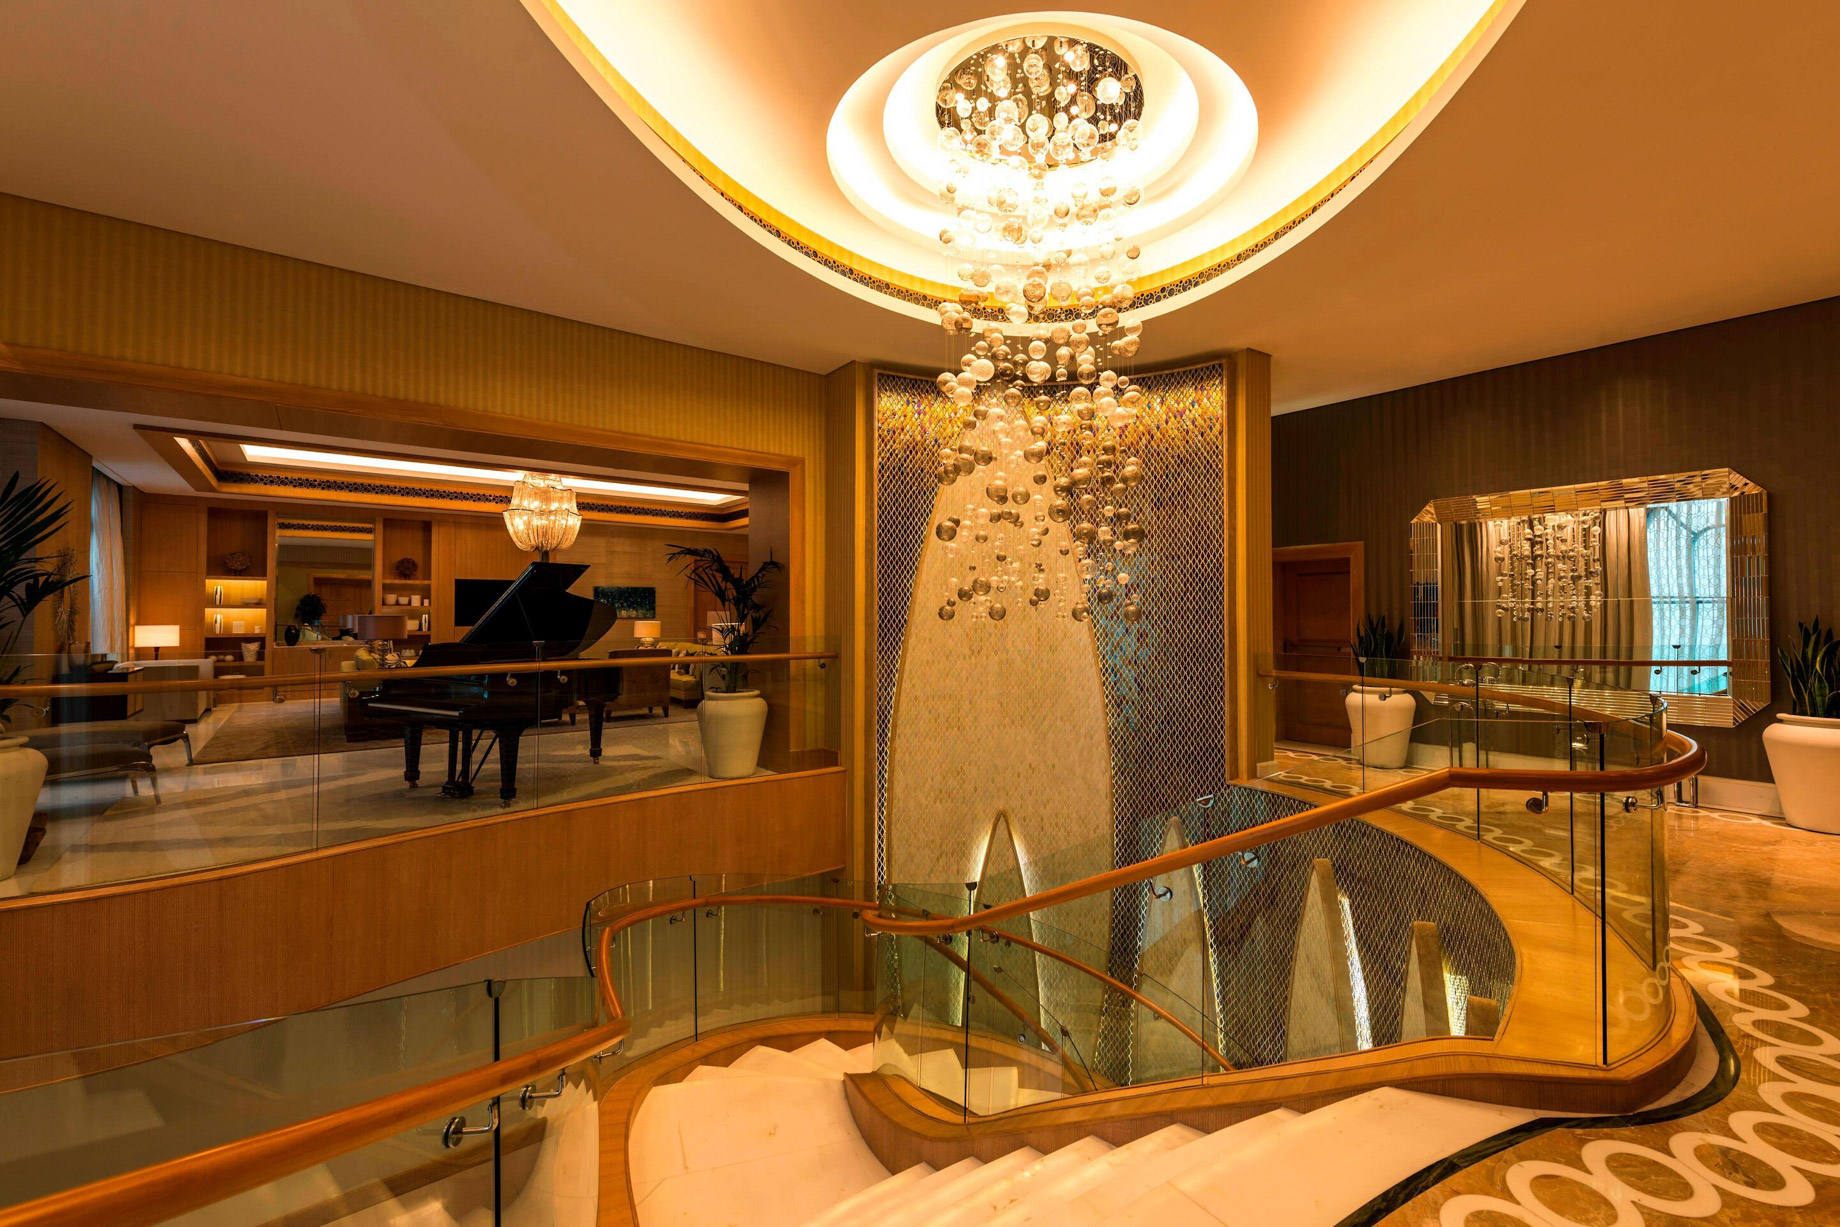 The St. Regis Saadiyat Island Resort – Abu Dhabi, UAE – Royal Suite Living Room Interior